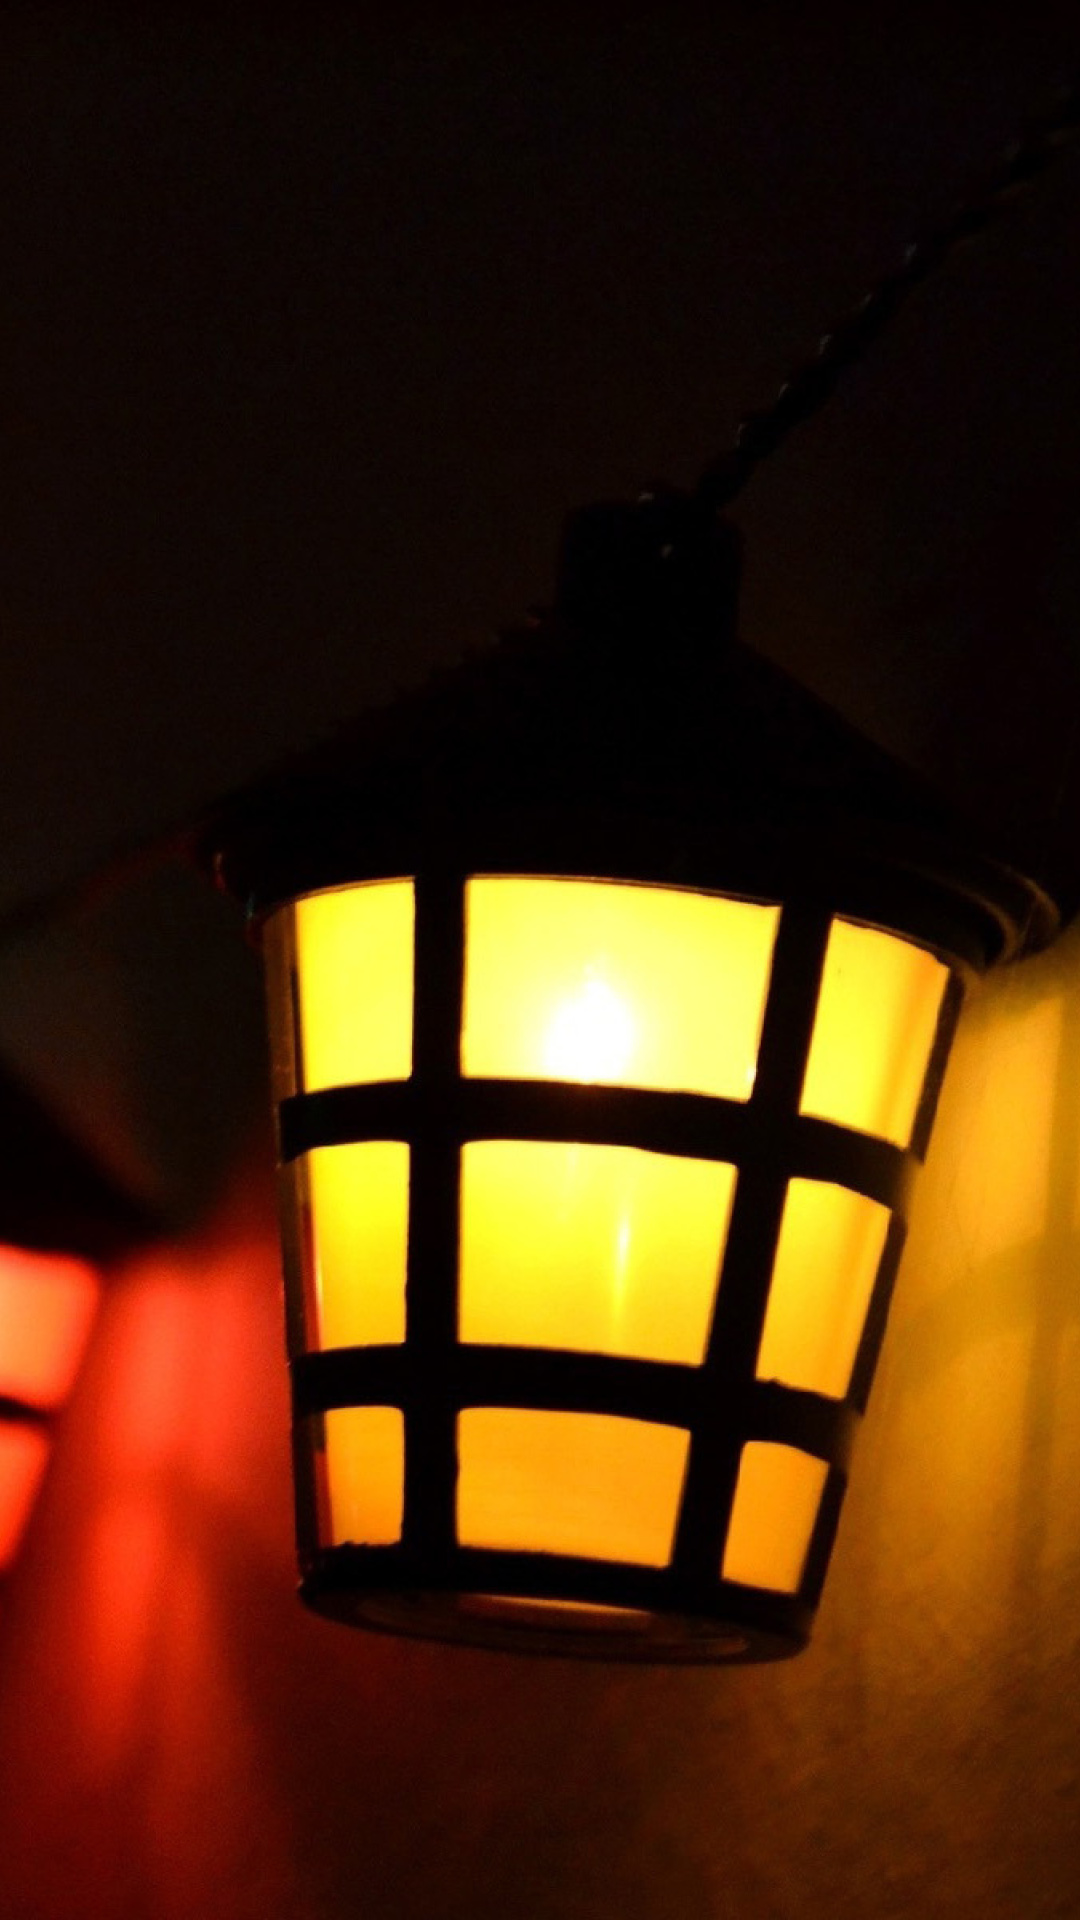 Das Lamps Lights Wallpaper 1080x1920